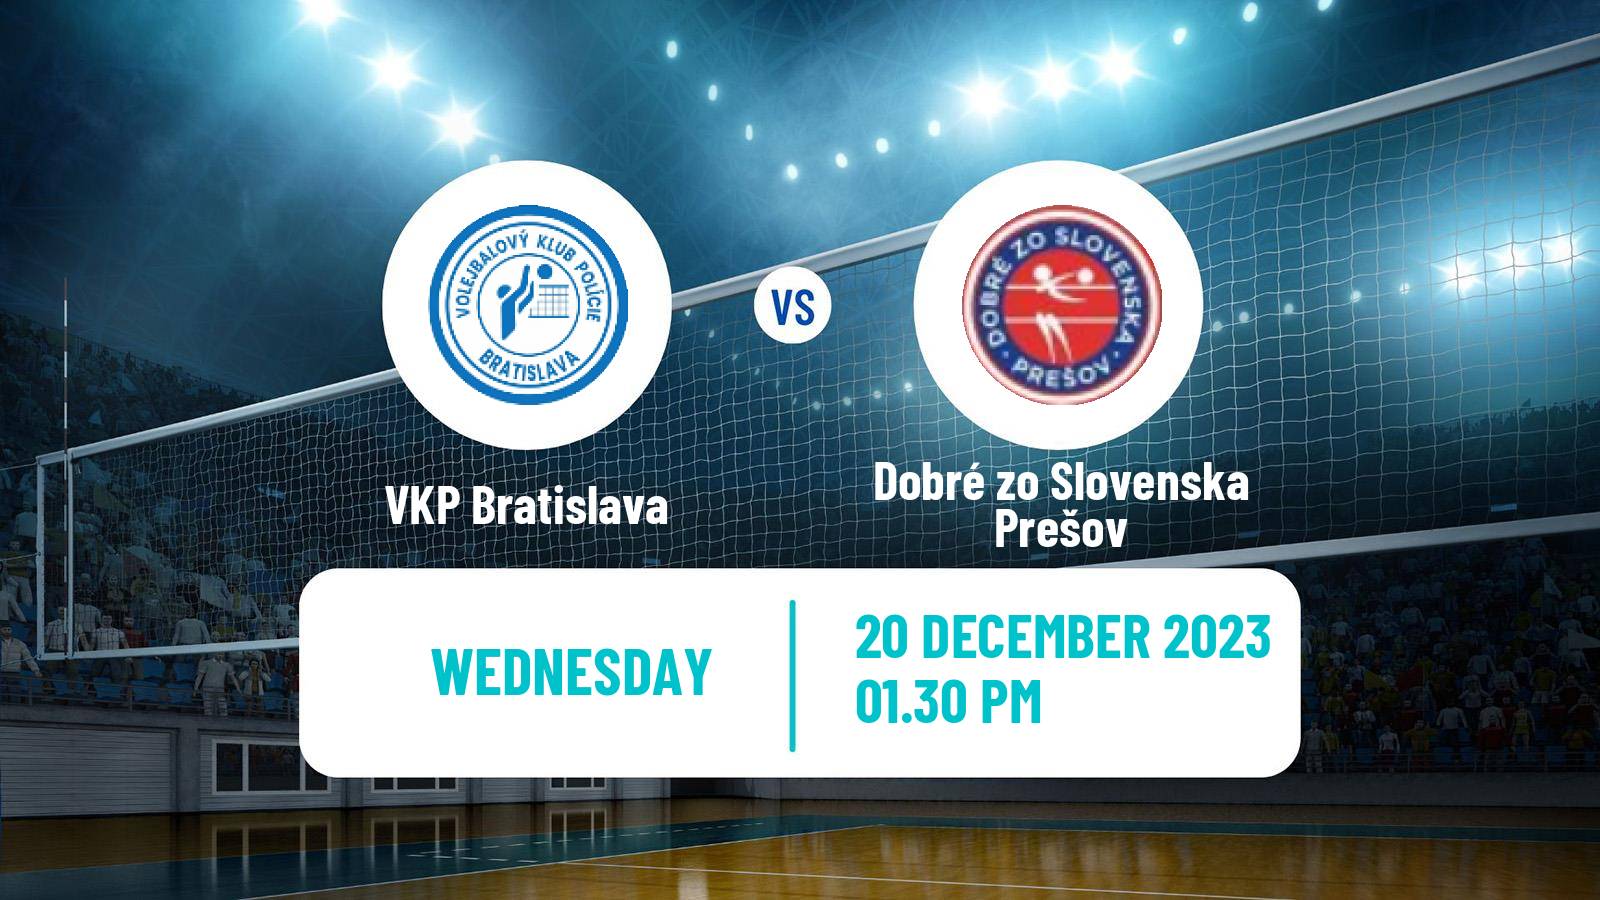 Volleyball Slovak Extraliga Volleyball Women VKP Bratislava - Dobré zo Slovenska Prešov